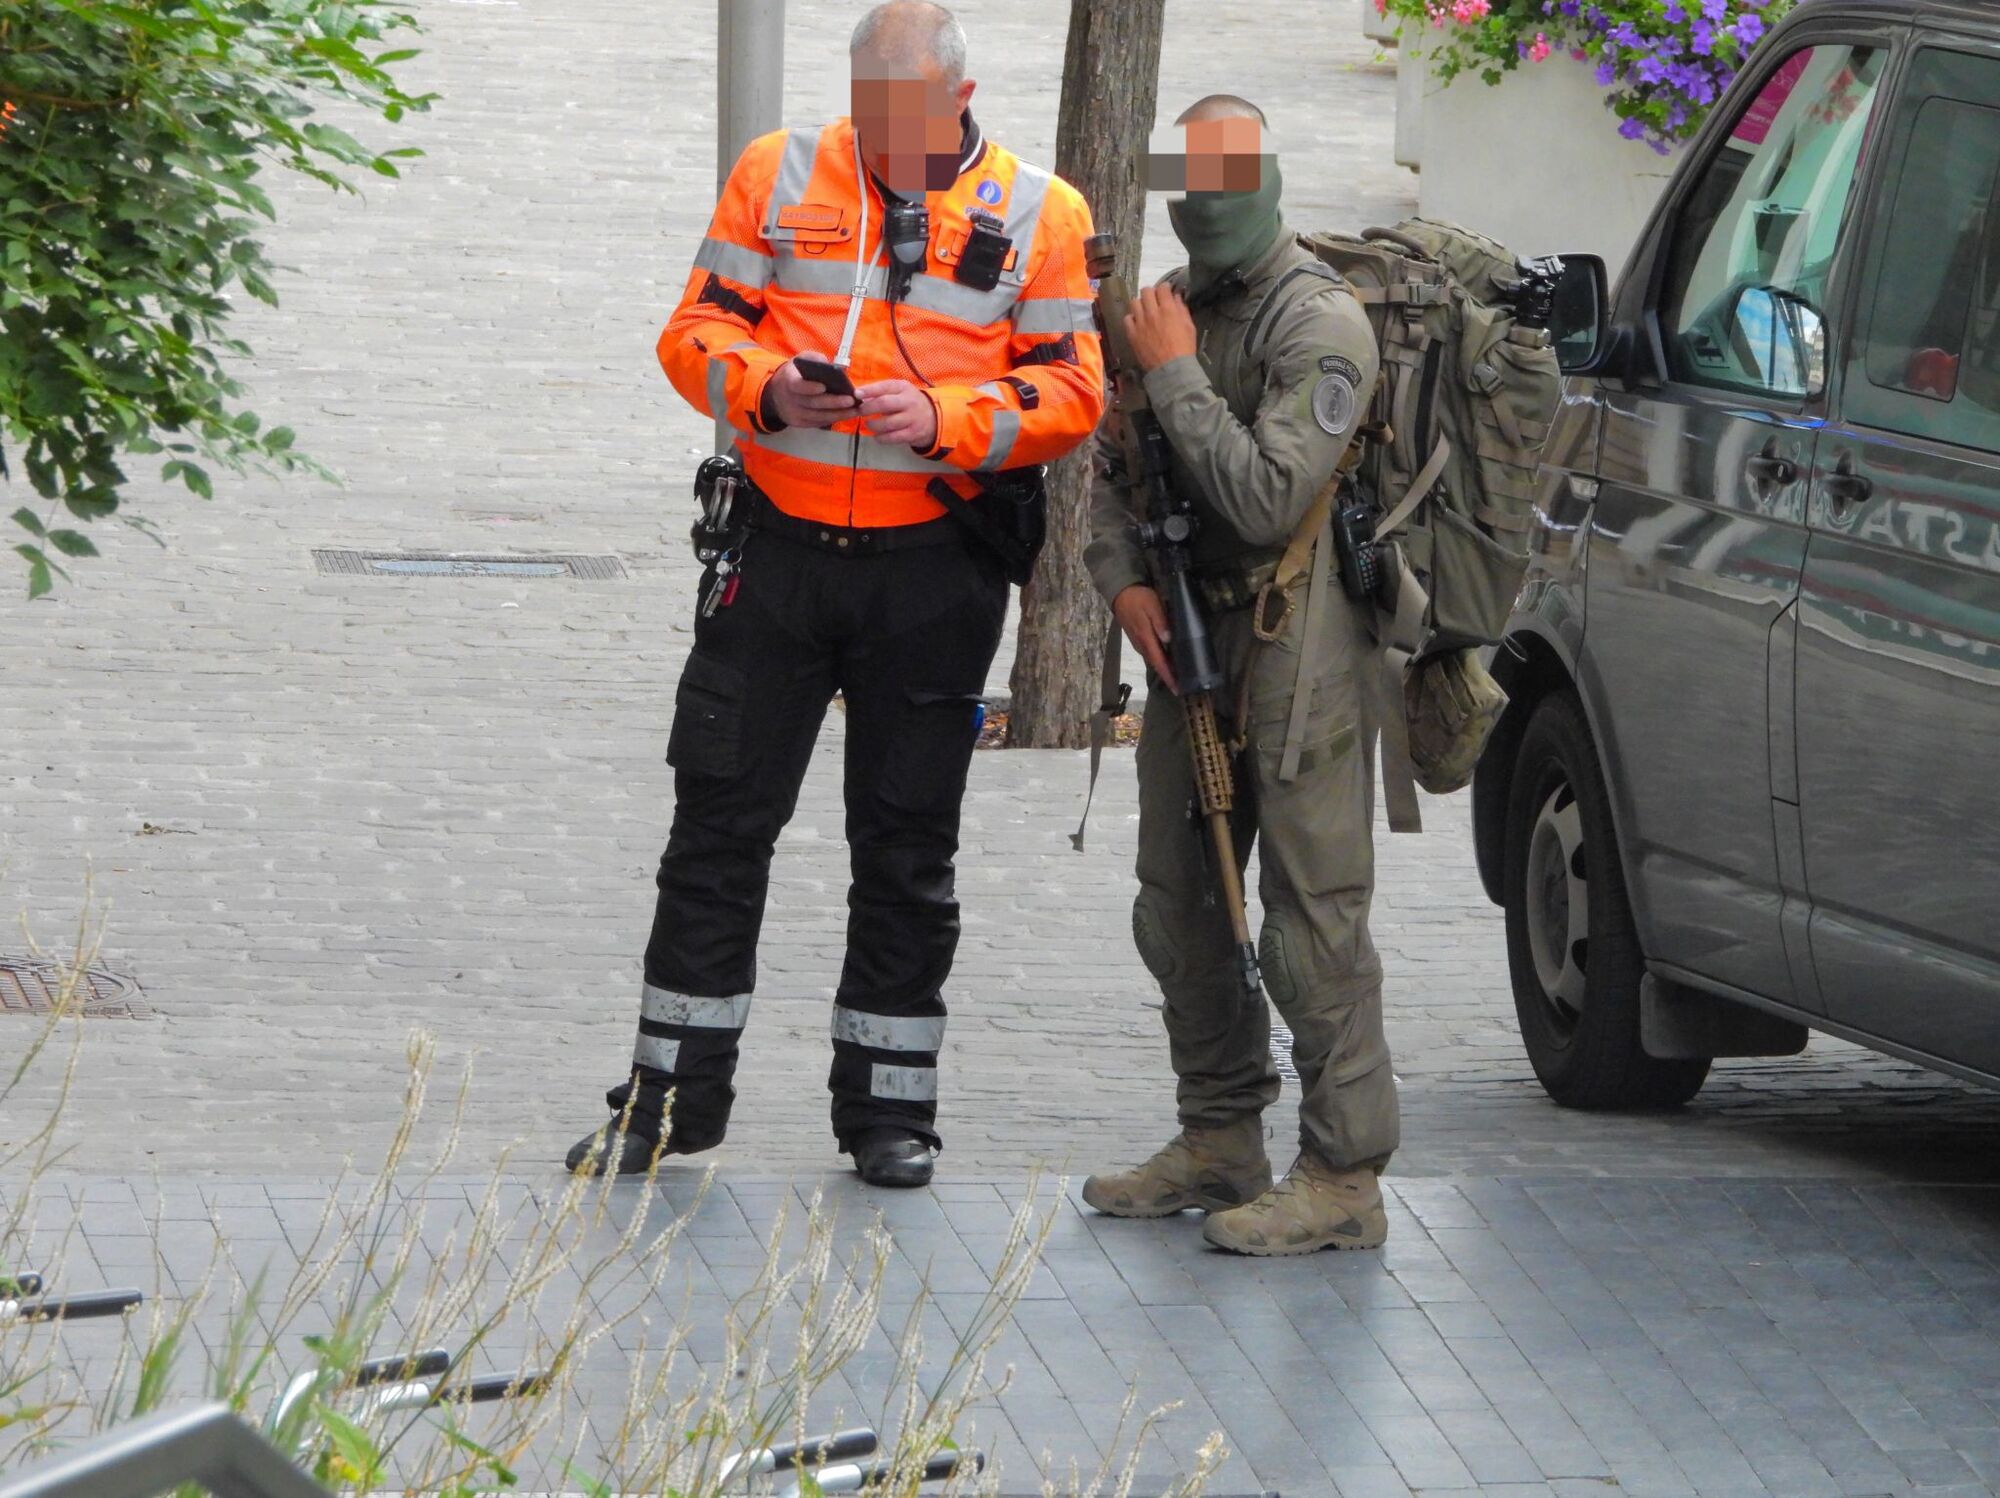 Speciale eenheden in Hasseltse binnenstad voor gevaarlijk incident